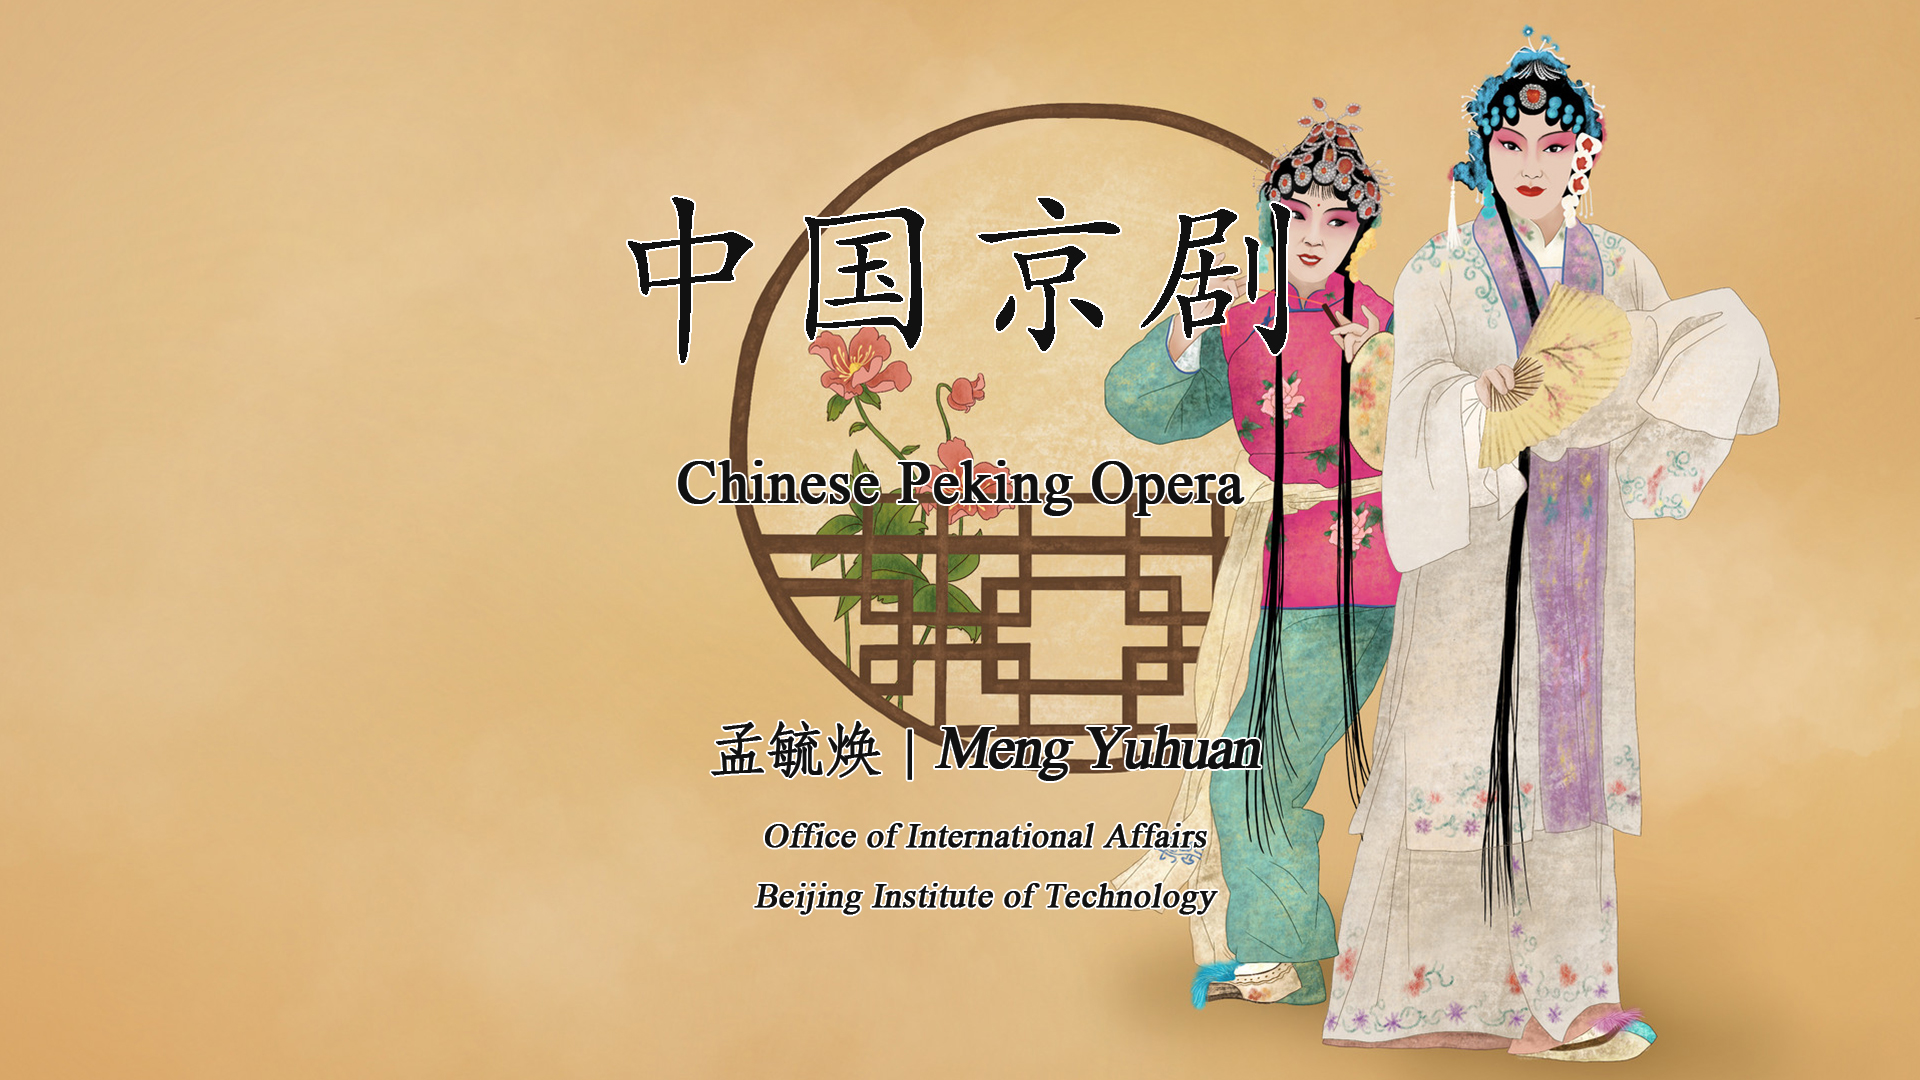 Chinese Peking Opera